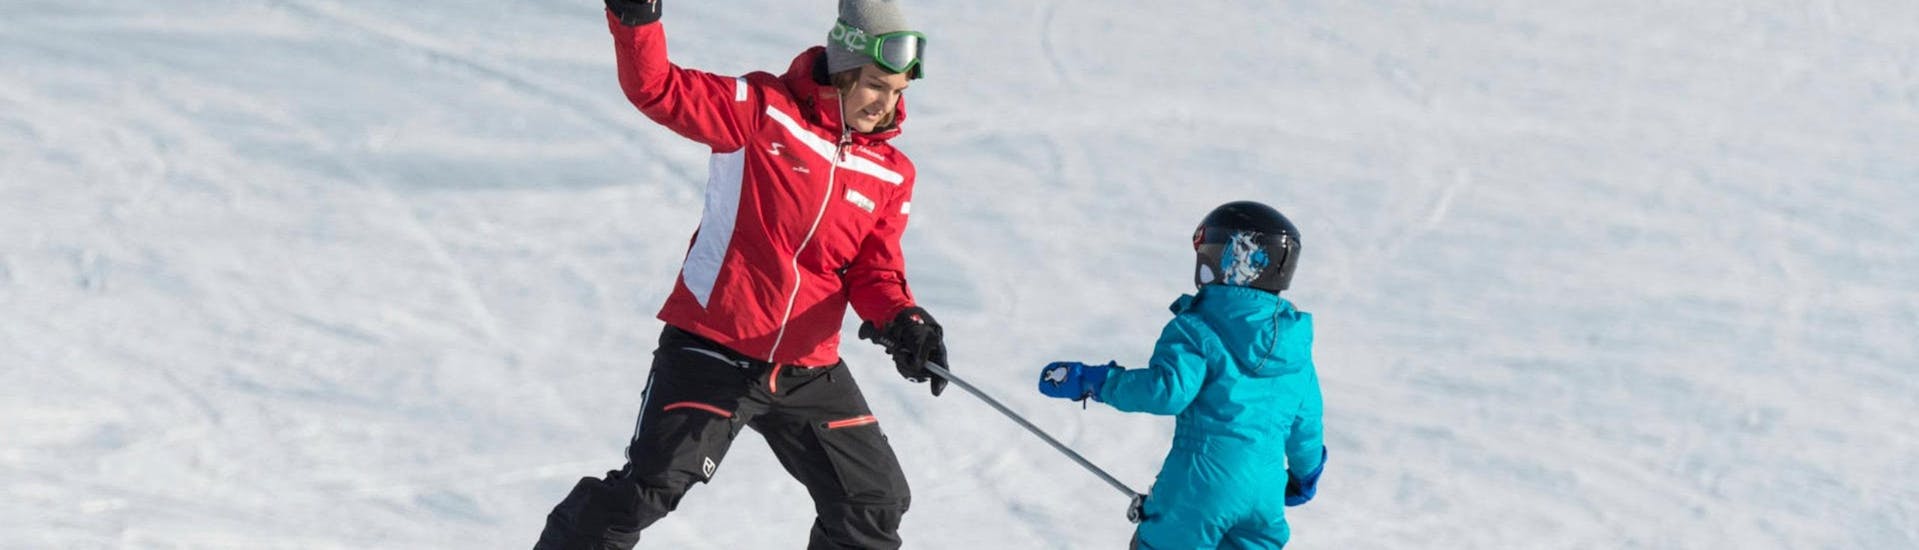 Lezioni private di sci per bambini a partire da 4 anni principianti assoluti.